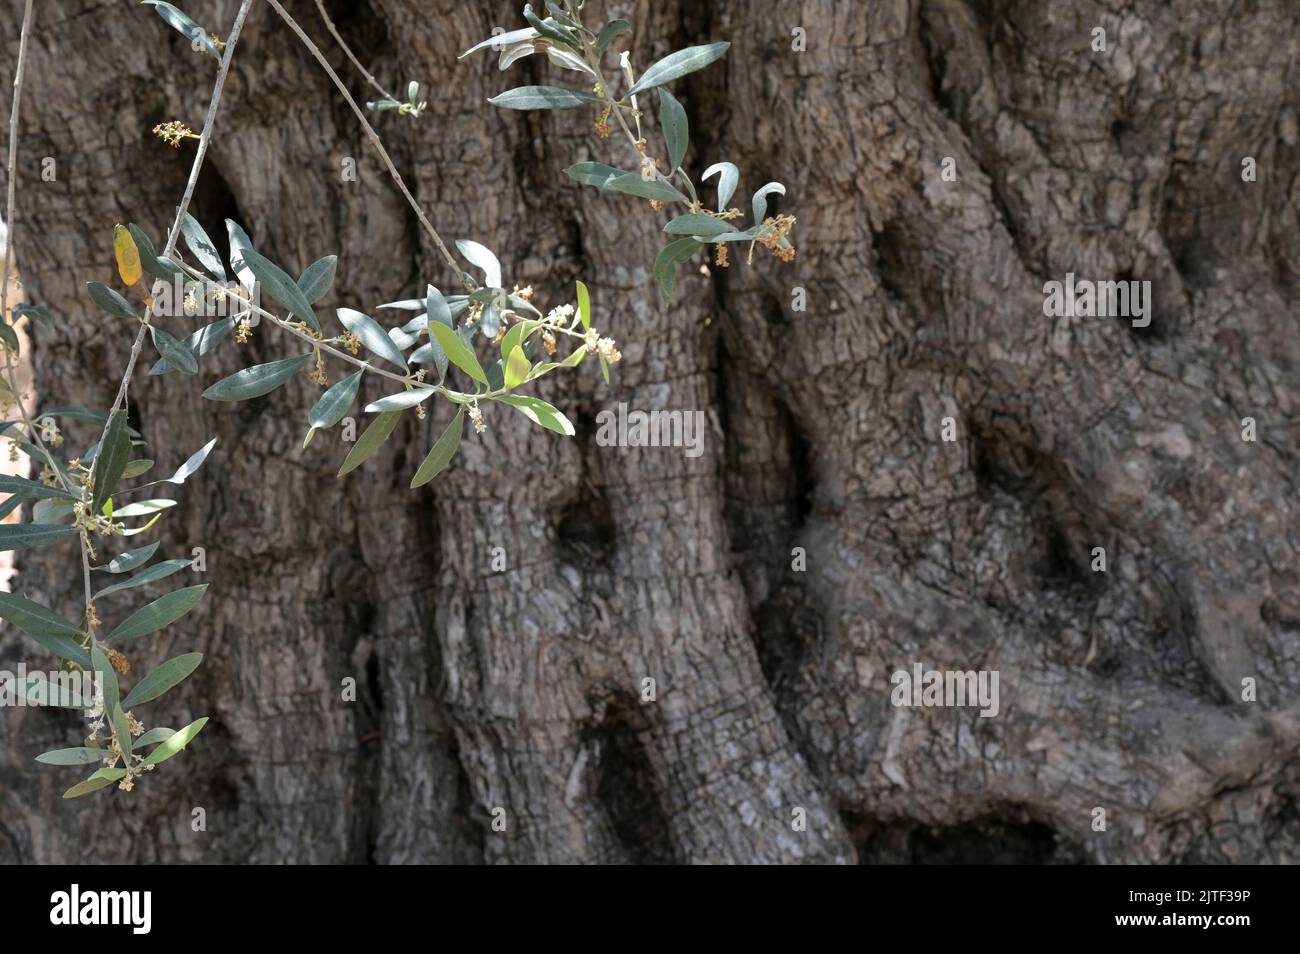 PALESTINE, Jenin, olive farming, 200 year old olive tree from Roman empire era / PALÄSTINA, Jenin, Oliven Anbau, 2000 Jahre alter Olivenbaum aus der römischen Zeit Stock Photo